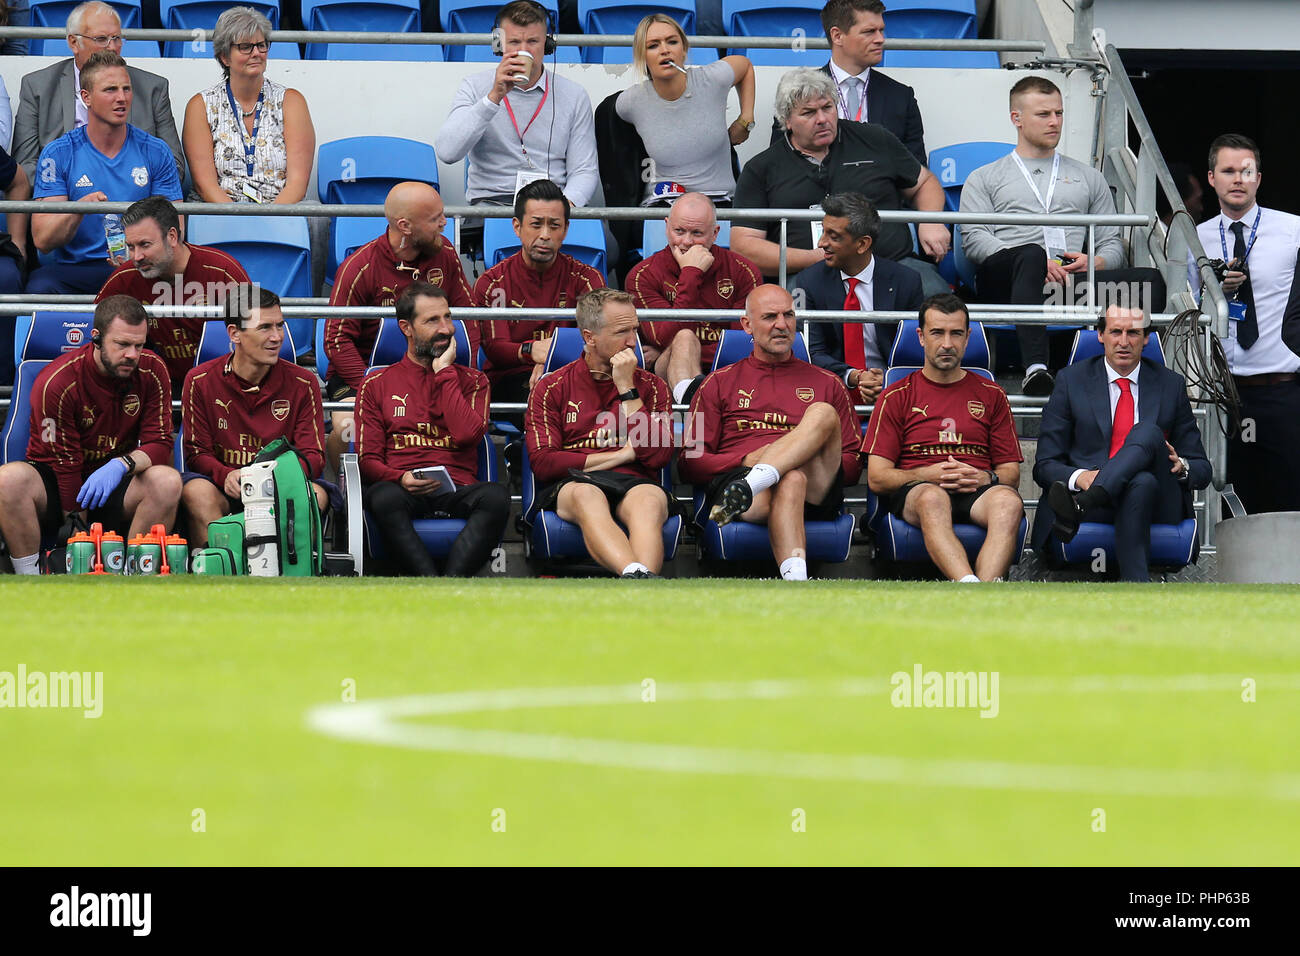 Cardiff, Reino Unido. 02Nd Sep, 2018. Unai Emery , el gerente Arsenal (extremo derecho) se sitúa junto a toda su habitación trasera y los entrenadores en el banquillo. Premier League, Cardiff